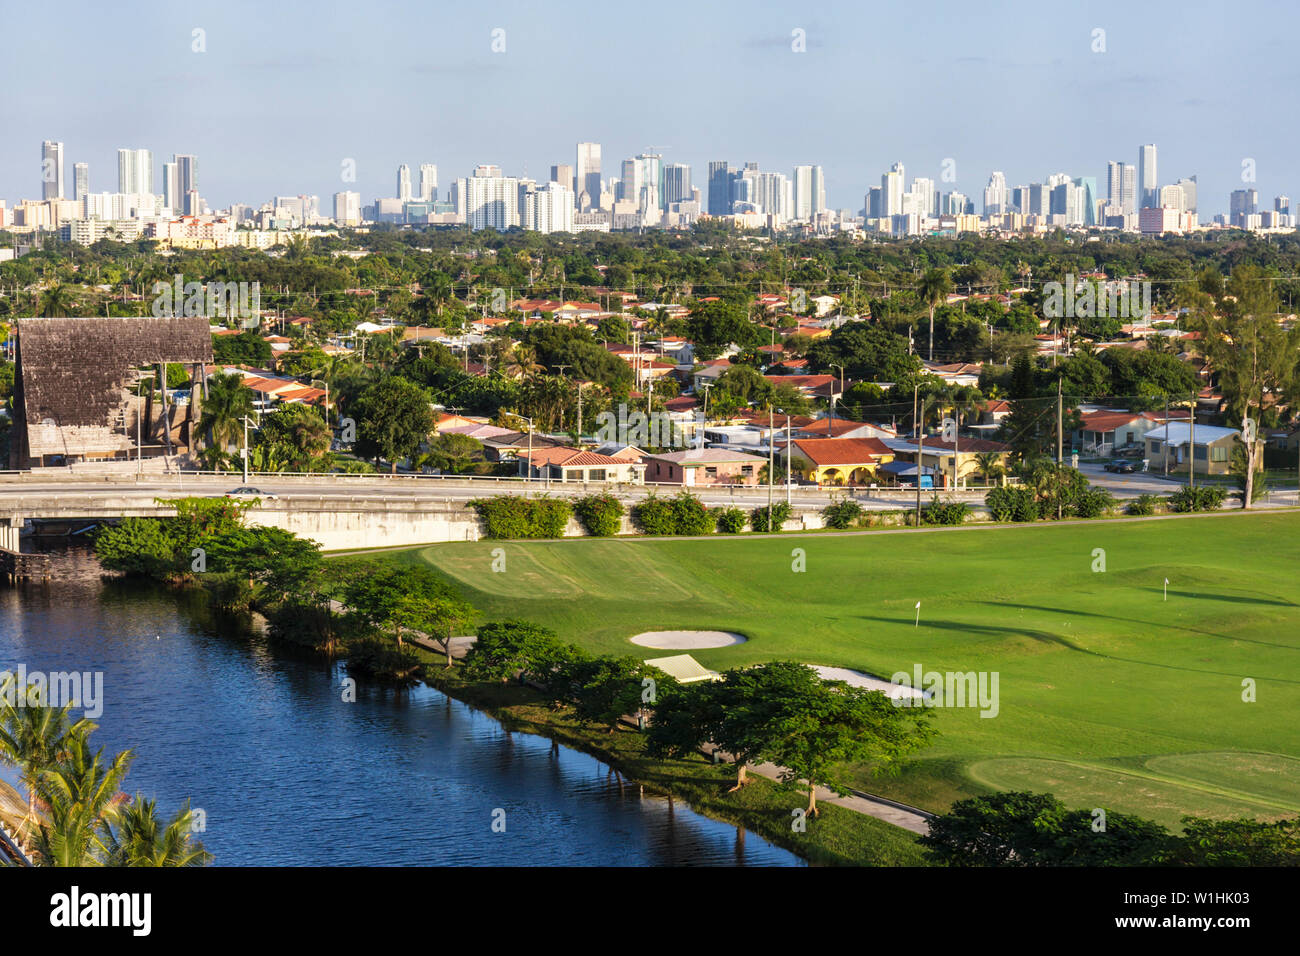 Miami Florida,canale,centro,skyline,edifici,skyline,panoramica,urbano,campo da golf,alberi,verde,case,FL091031079 Foto Stock